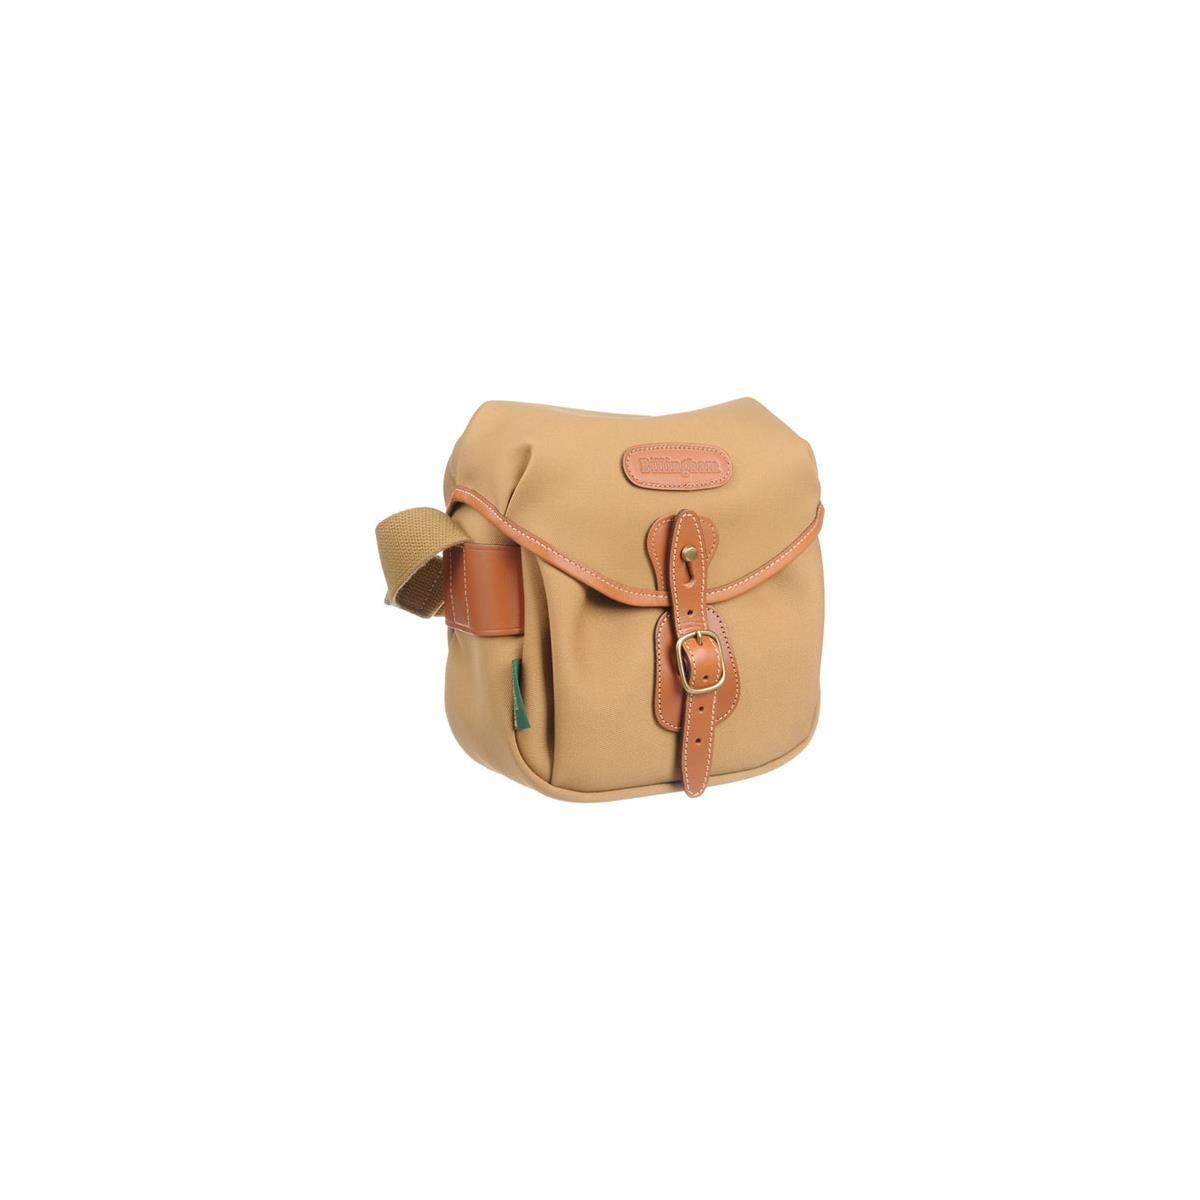 Billingham Digital Hadley Bag (Khaki  with Tan Leather Trim)